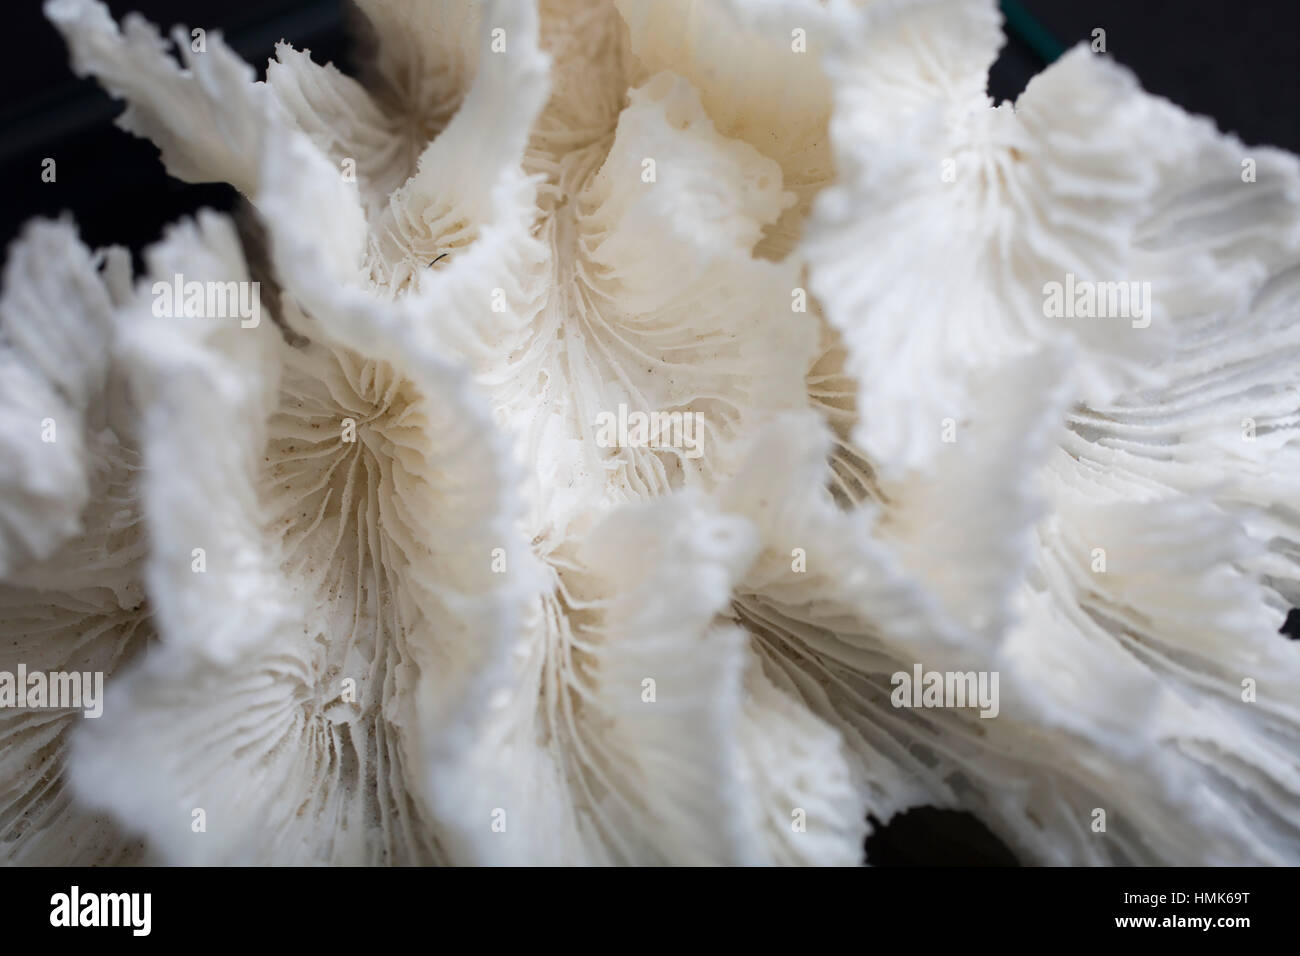 Weiße Korallen vor schwarzem Hintergrund Studioaufnahme Nahaufnahme Makro-detail Stockfoto